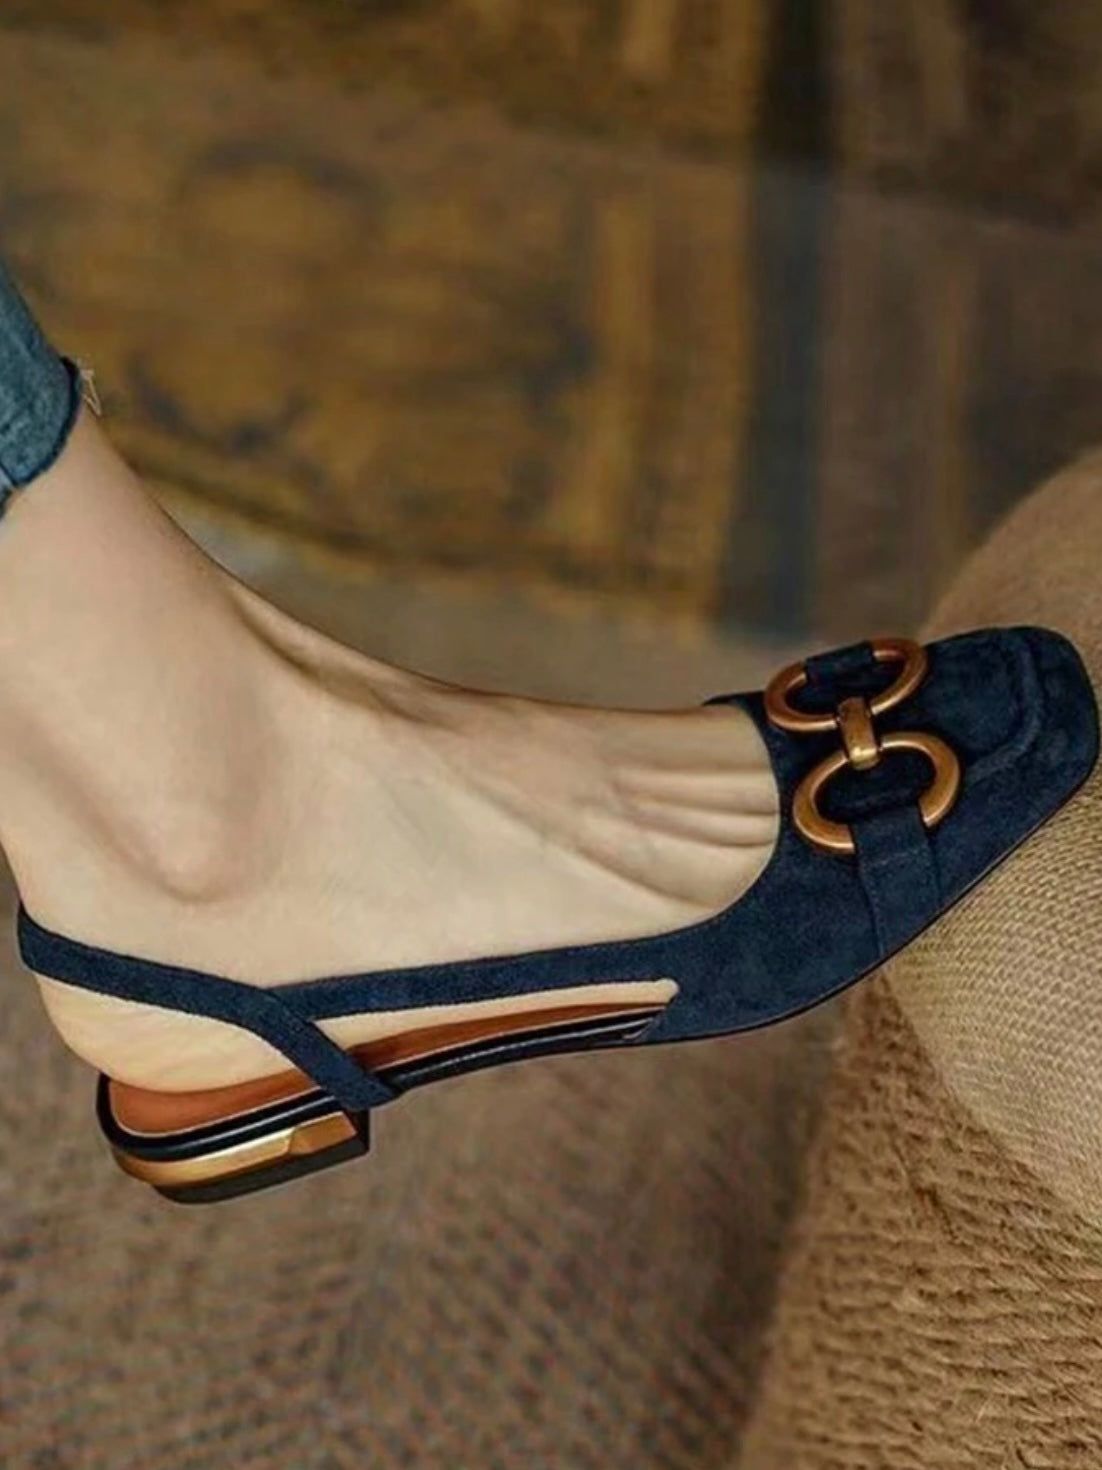 Blue flats shoes